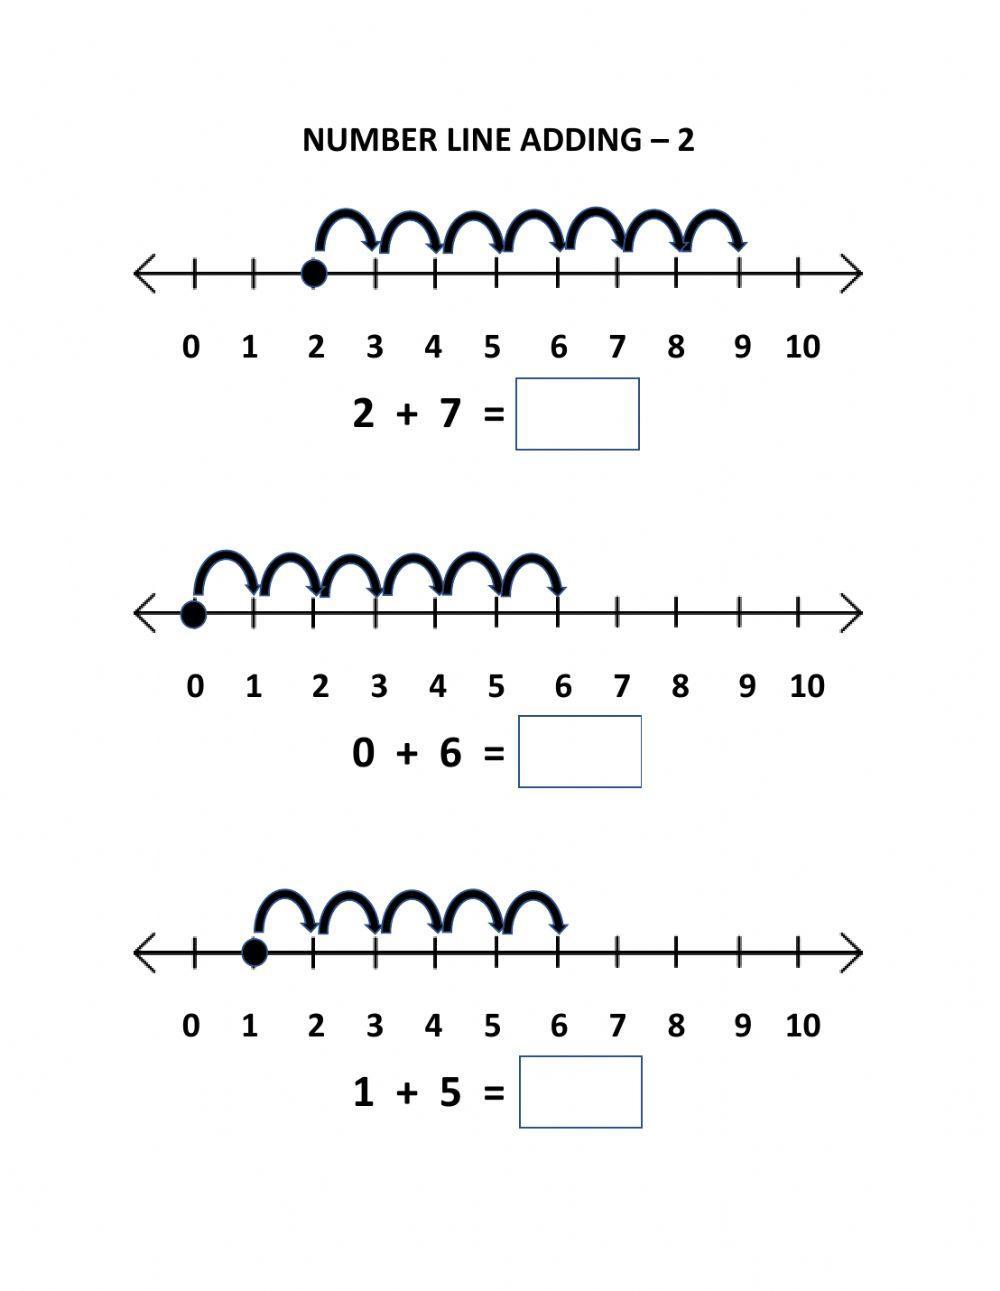 Number Line Adding - 2